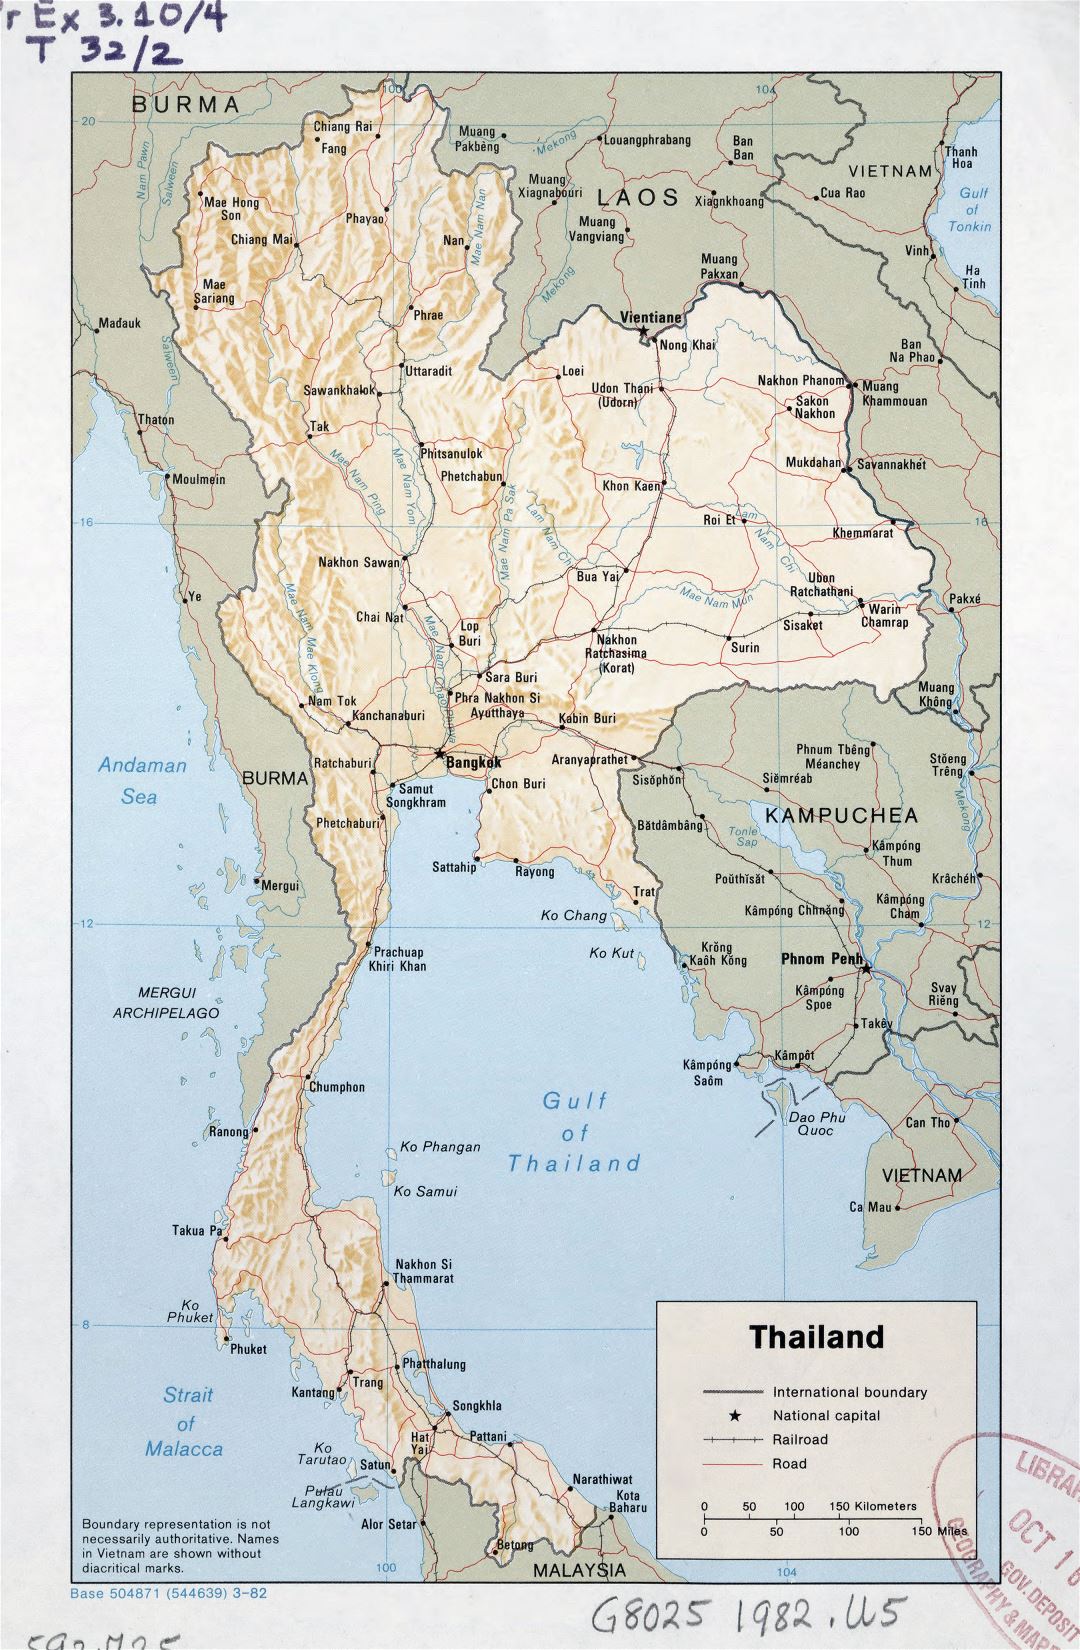 Grande detallado mapa político de Tailandia con relieve, carreteras, ferrocarriles y principales ciudades - 1982